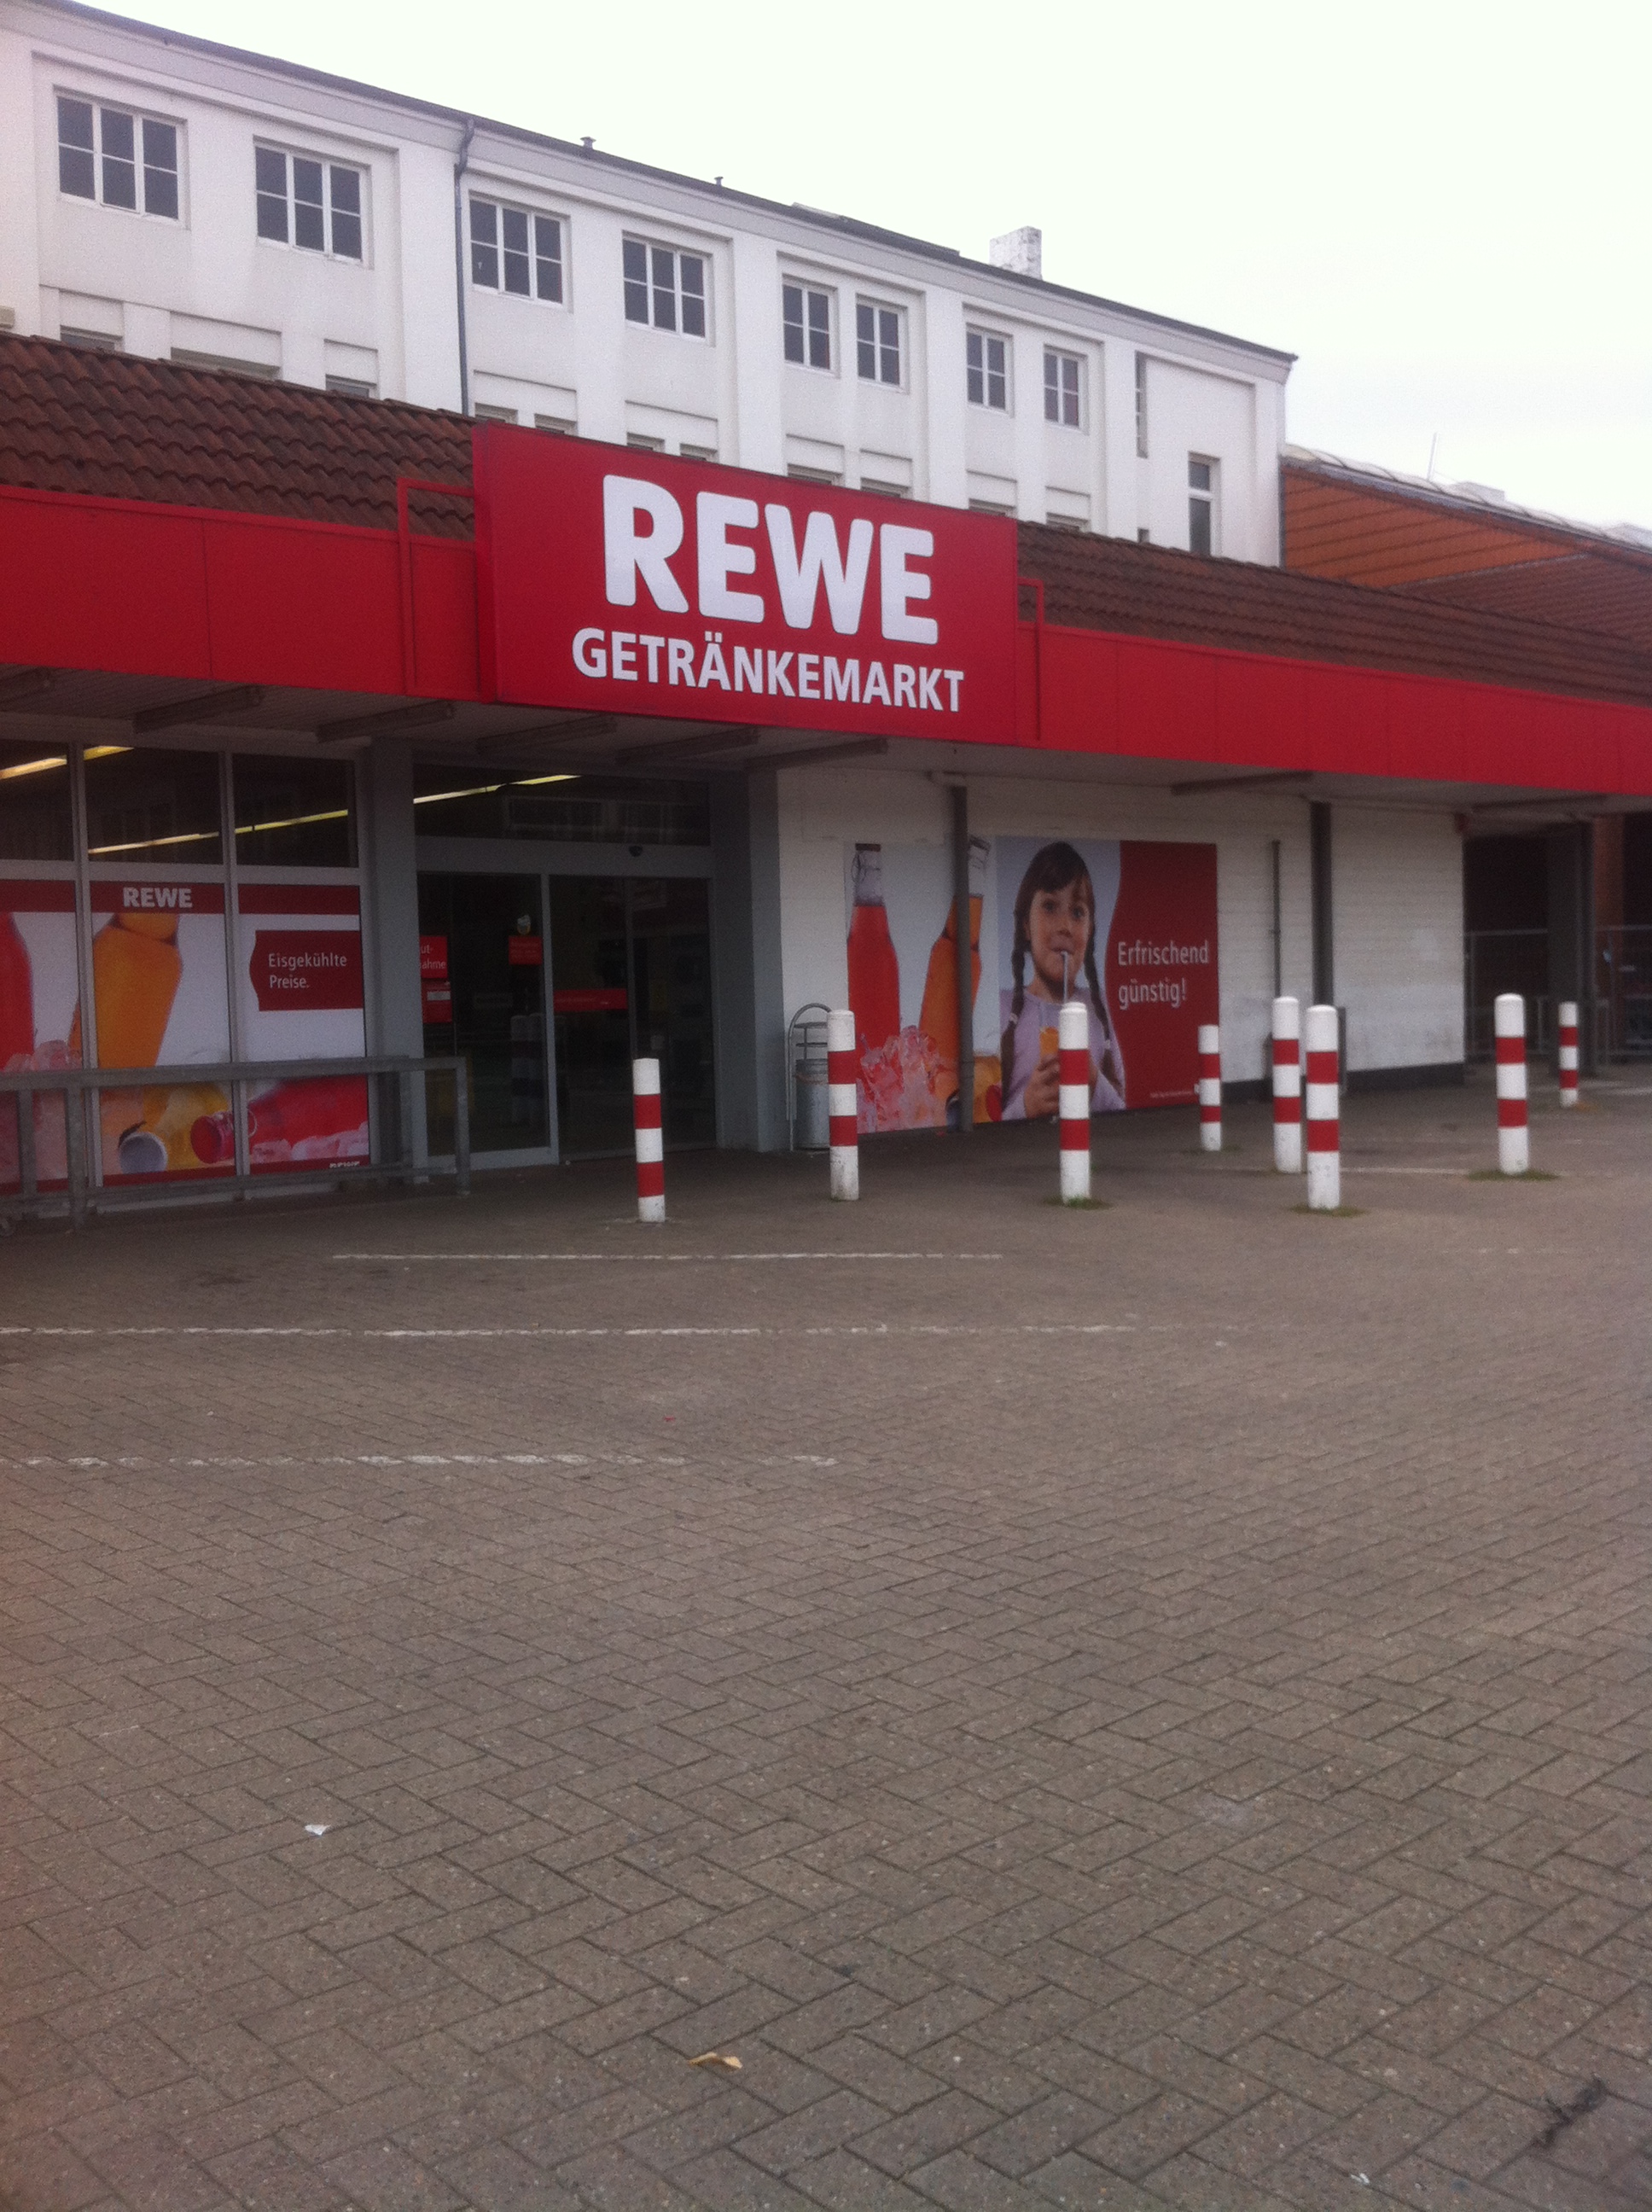 REWE Getränkemarkt in Walle